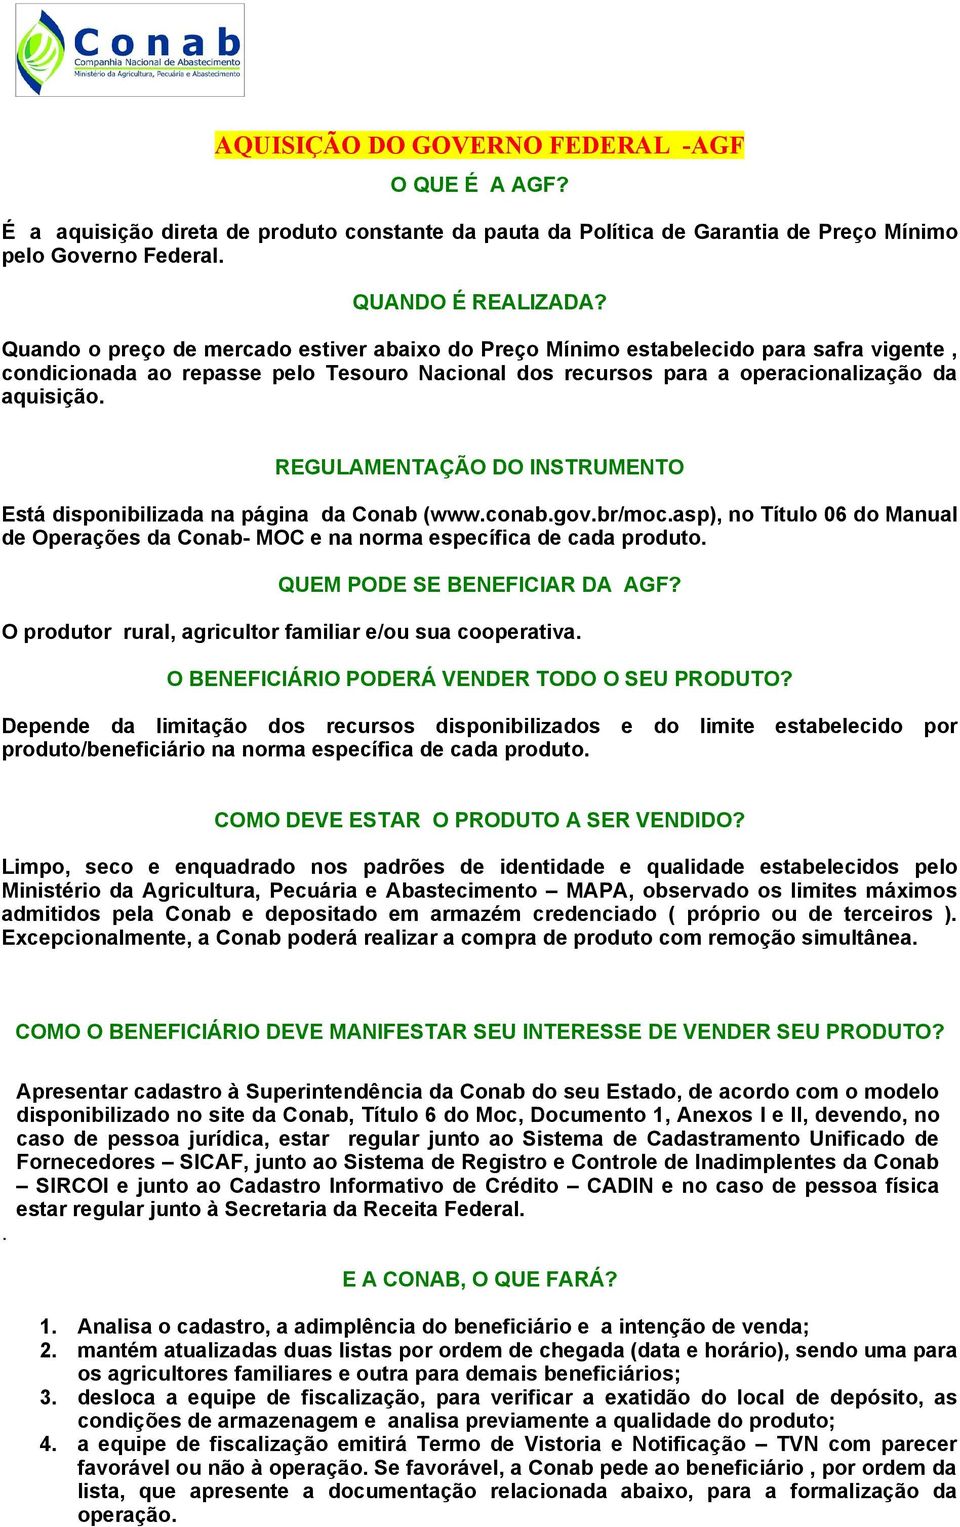 REGULAMENTAÇÃO DO INSTRUMENTO Está disponibilizada na página da Conab (www.conab.gov.br/moc.asp), no Título 06 do Manual de Operações da Conab- MOC e na norma específica de cada produto.